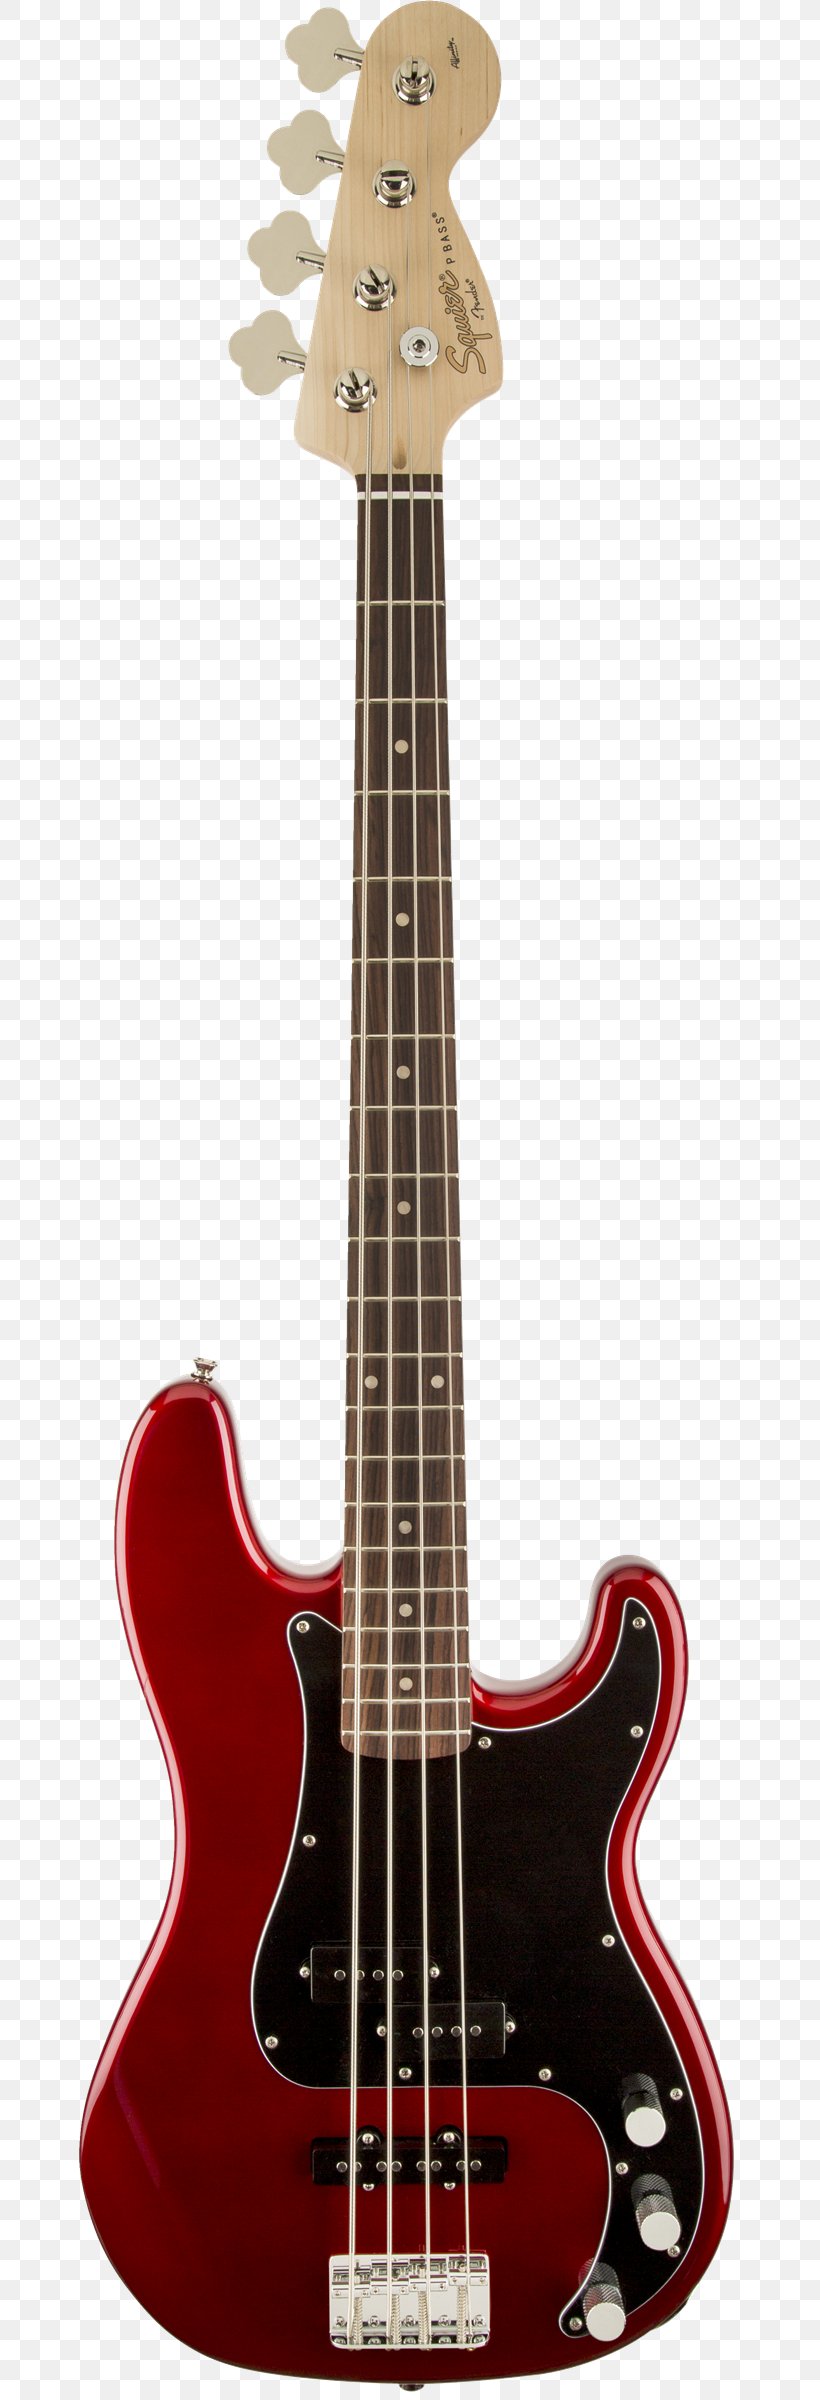 Fender Precision Bass Fender Mustang Bass Fender Jaguar Bass Squier Bass Guitar, PNG, 664x2400px, Watercolor, Cartoon, Flower, Frame, Heart Download Free